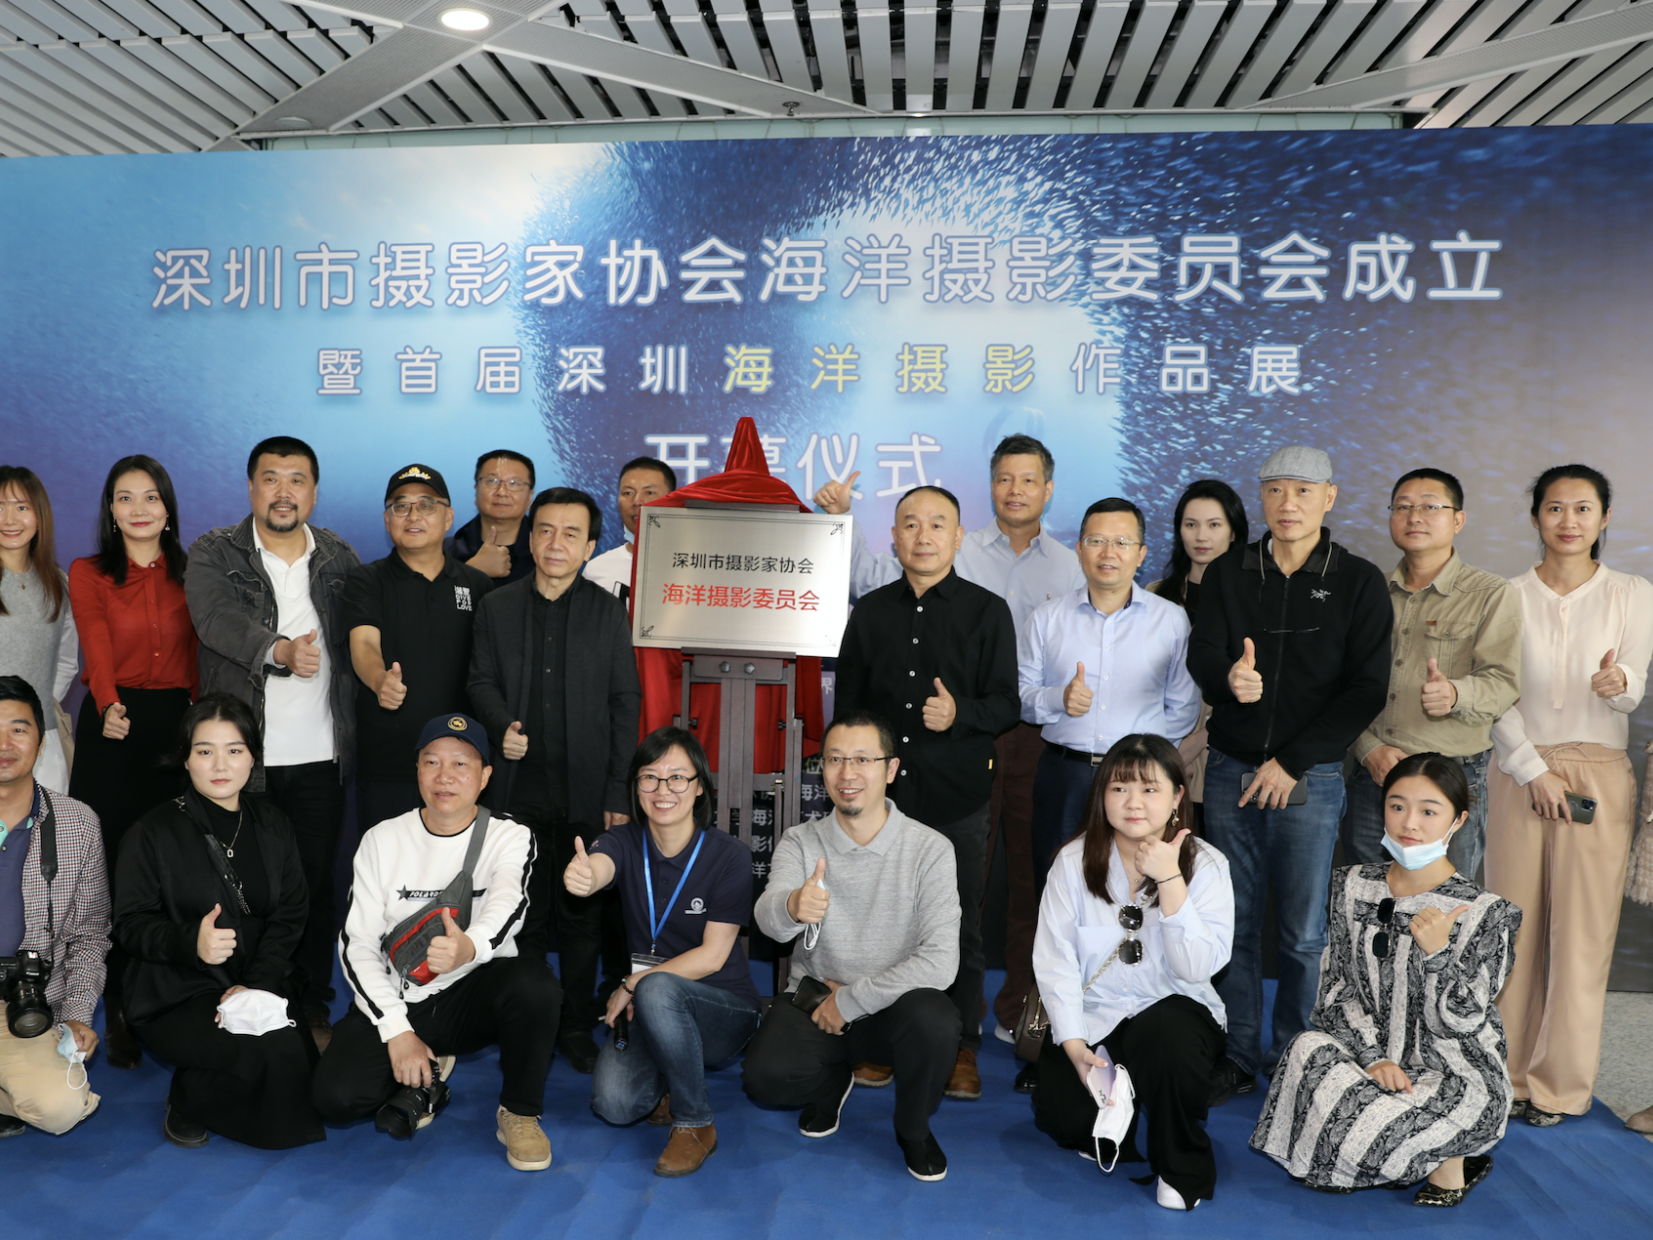 深圳市摄影家协会海洋摄影委员会正式挂牌成立